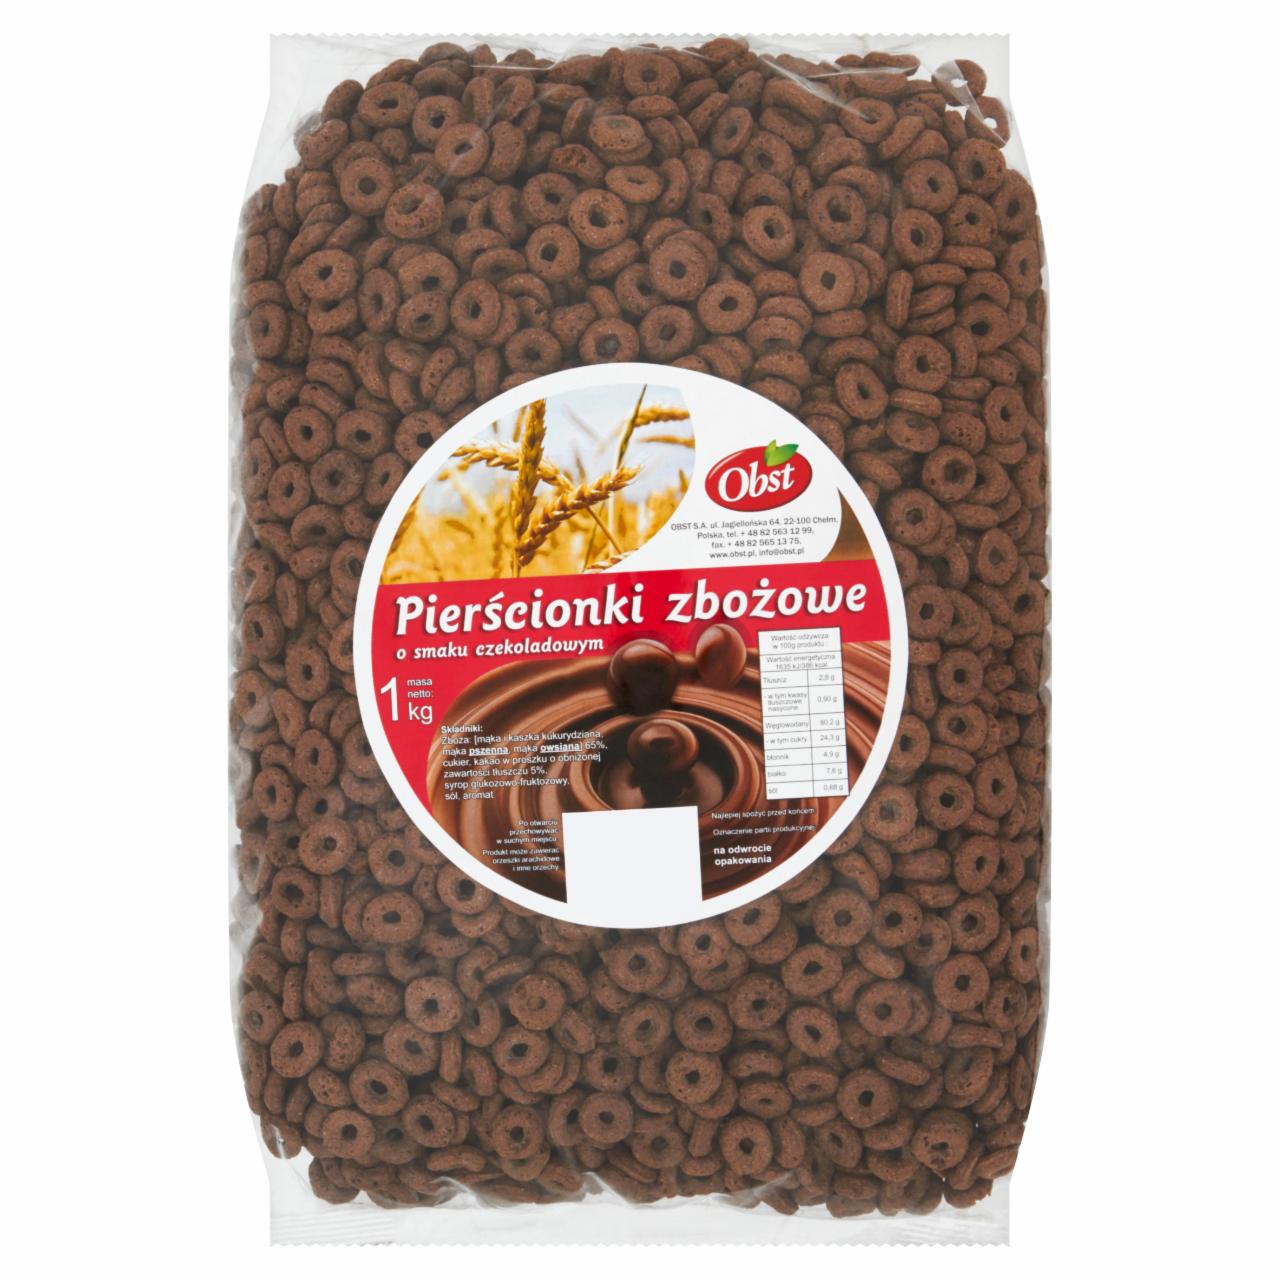 Zdjęcia - Obst Pierścionki zbożowe o smaku czekoladowym 1 kg